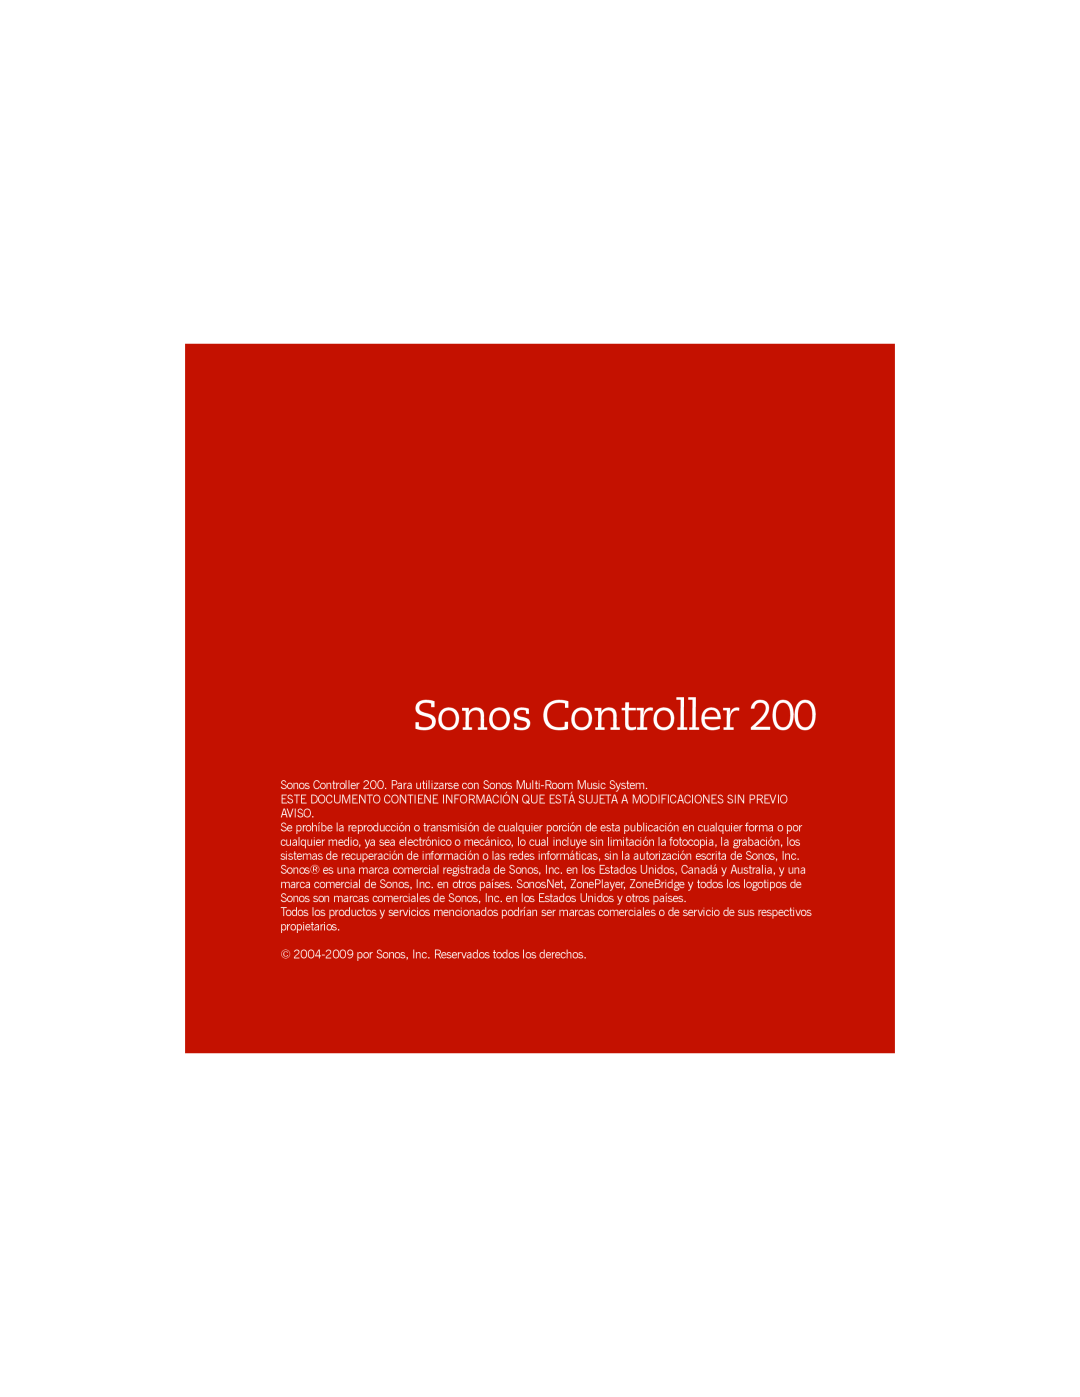 Sonos manual Sonos Controller 200. Para utilizarse con Sonos Multi-RoomMusic System 